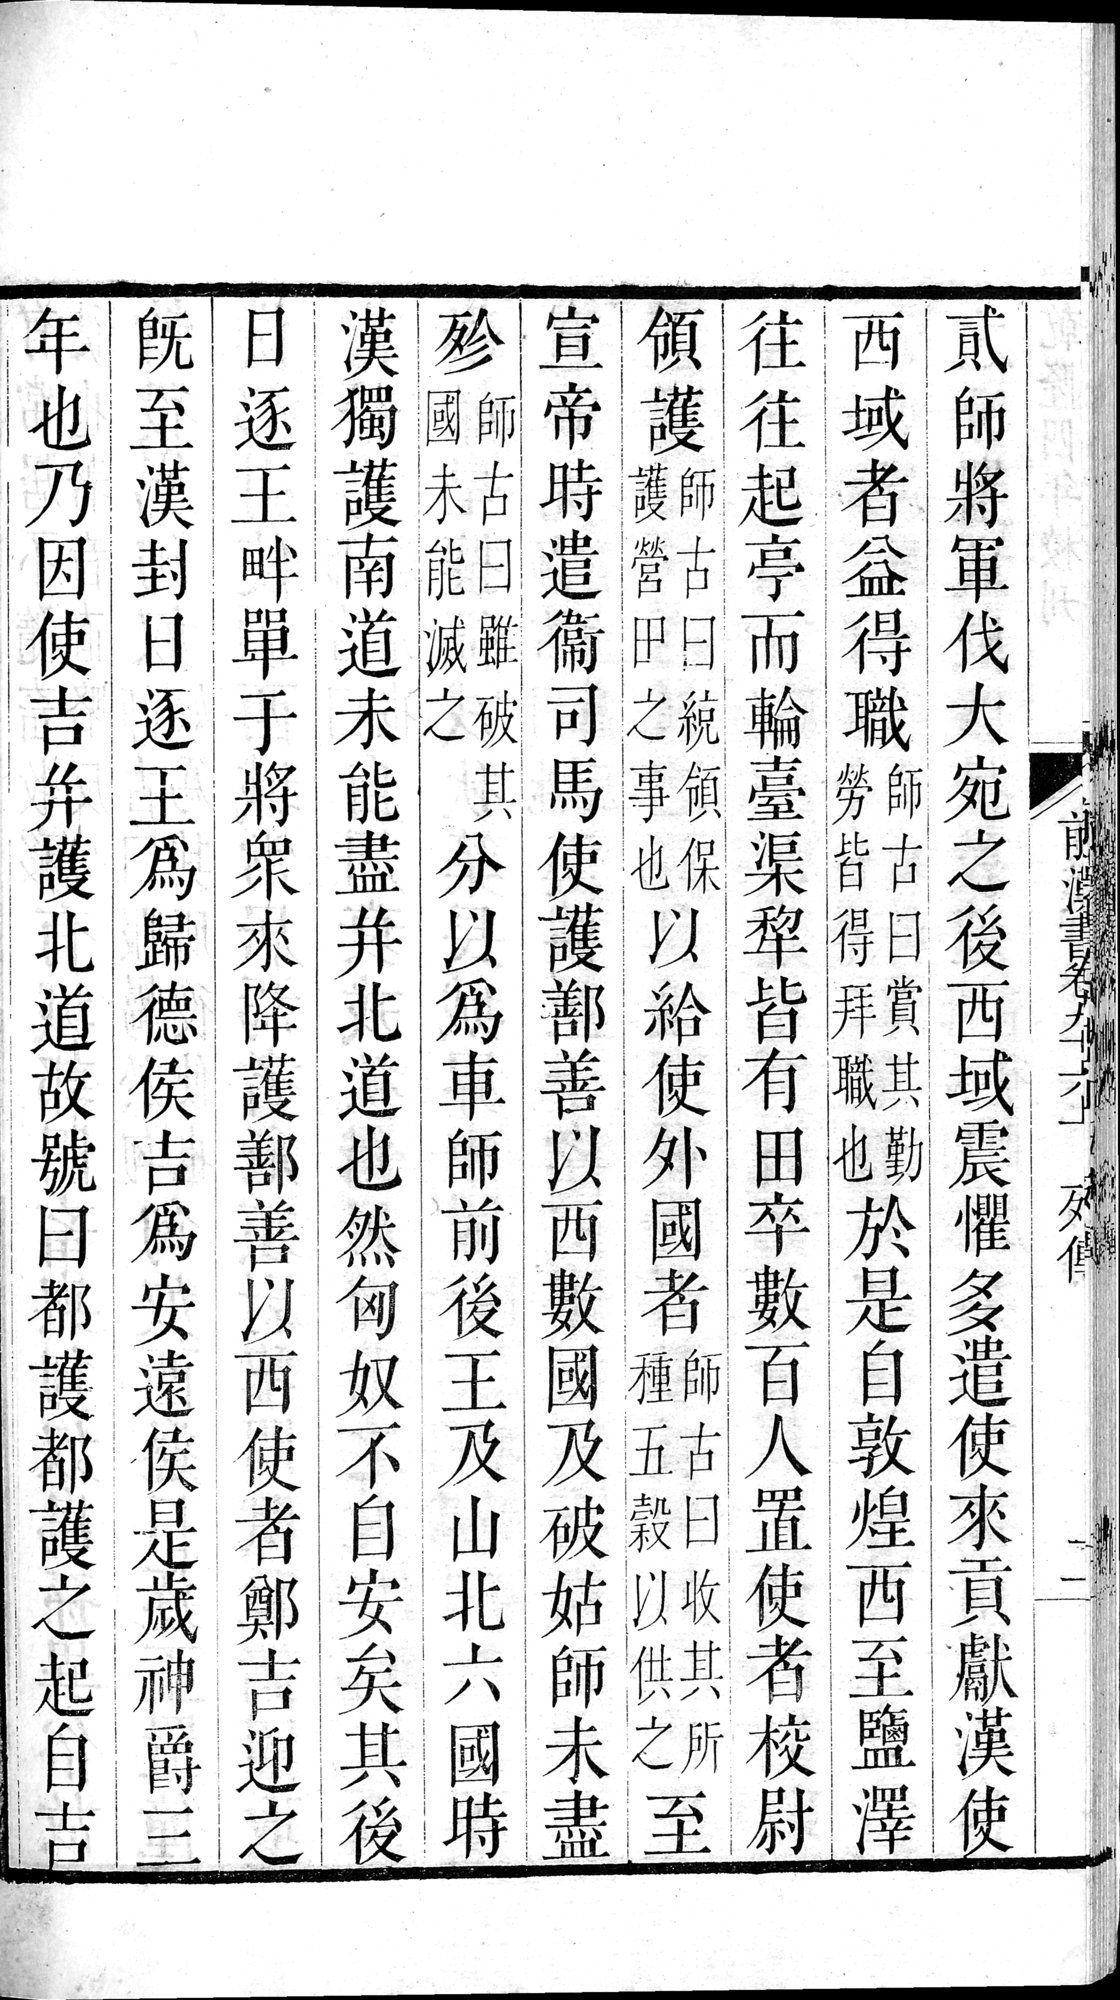 前漢書 : vol.96 top / Page 4 (Grayscale High Resolution Image)